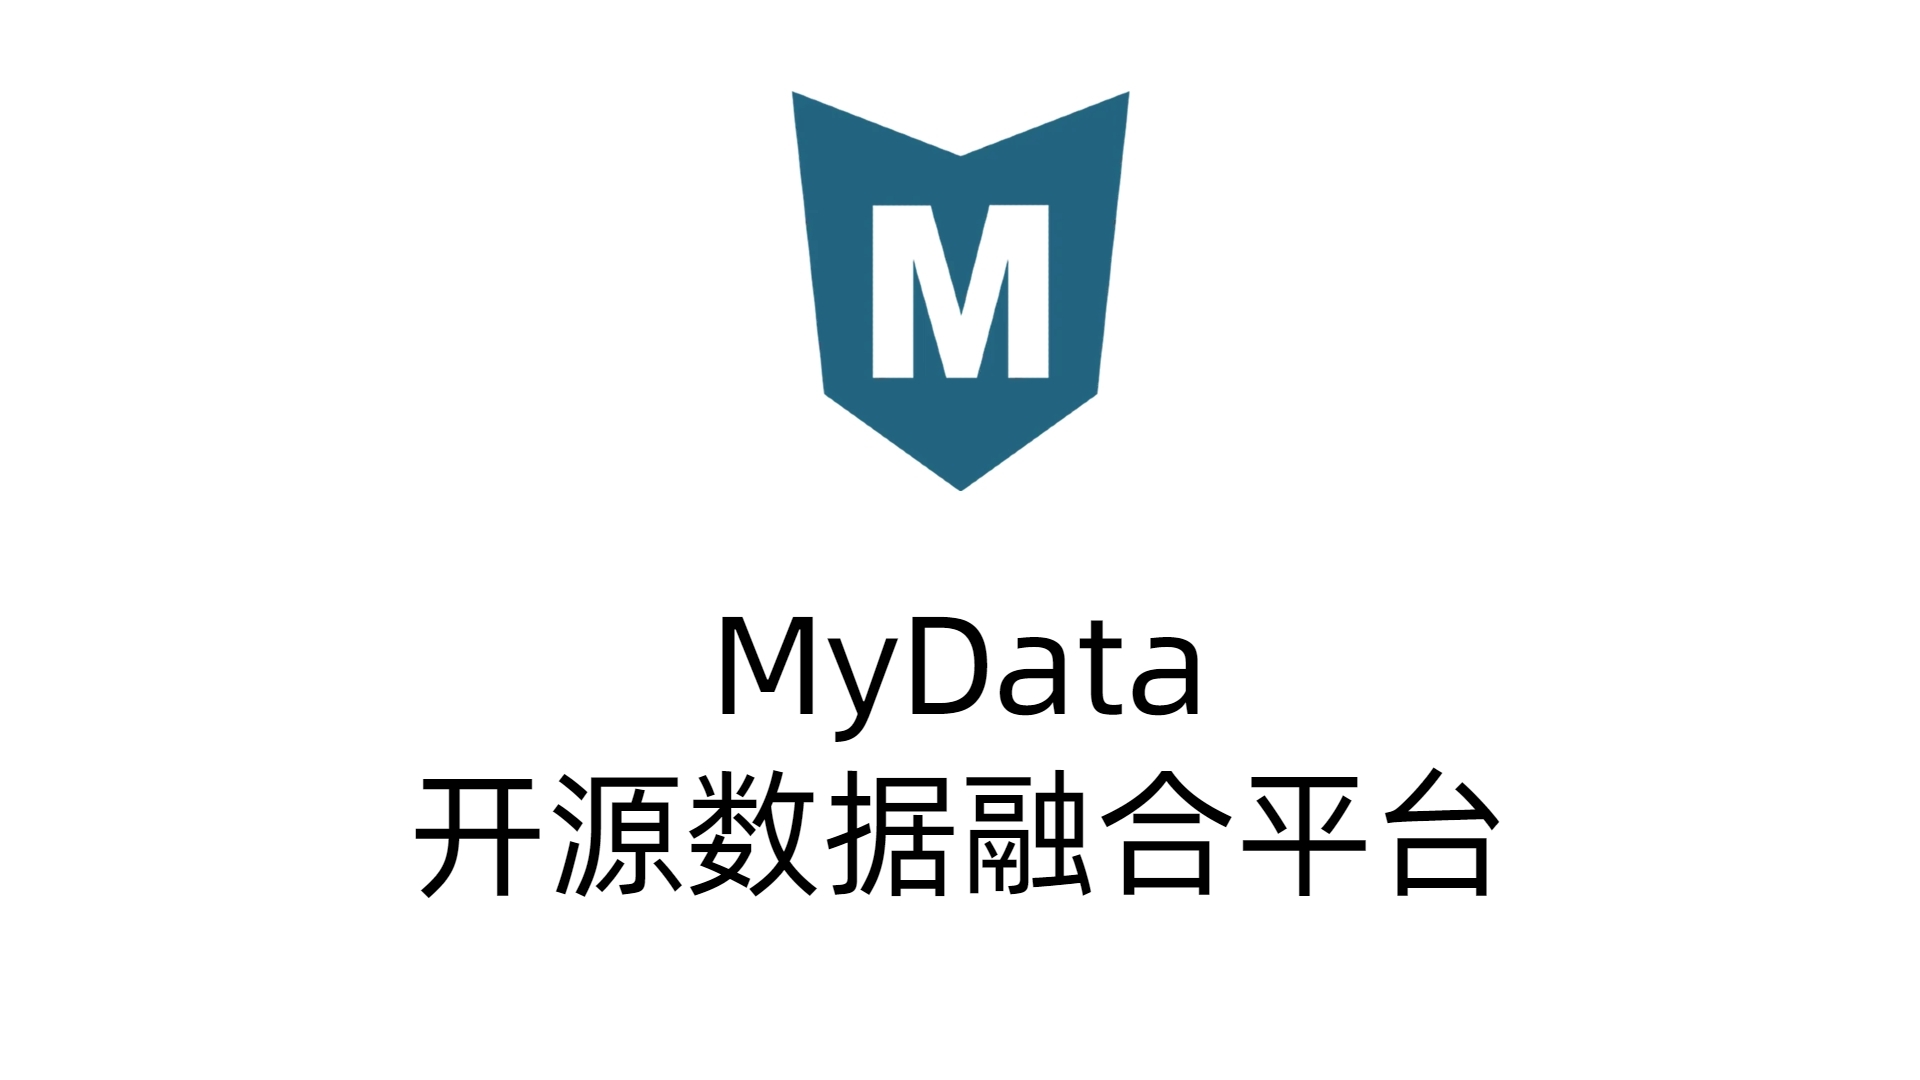 [自研开源] MyData v0.7.3 更新日志